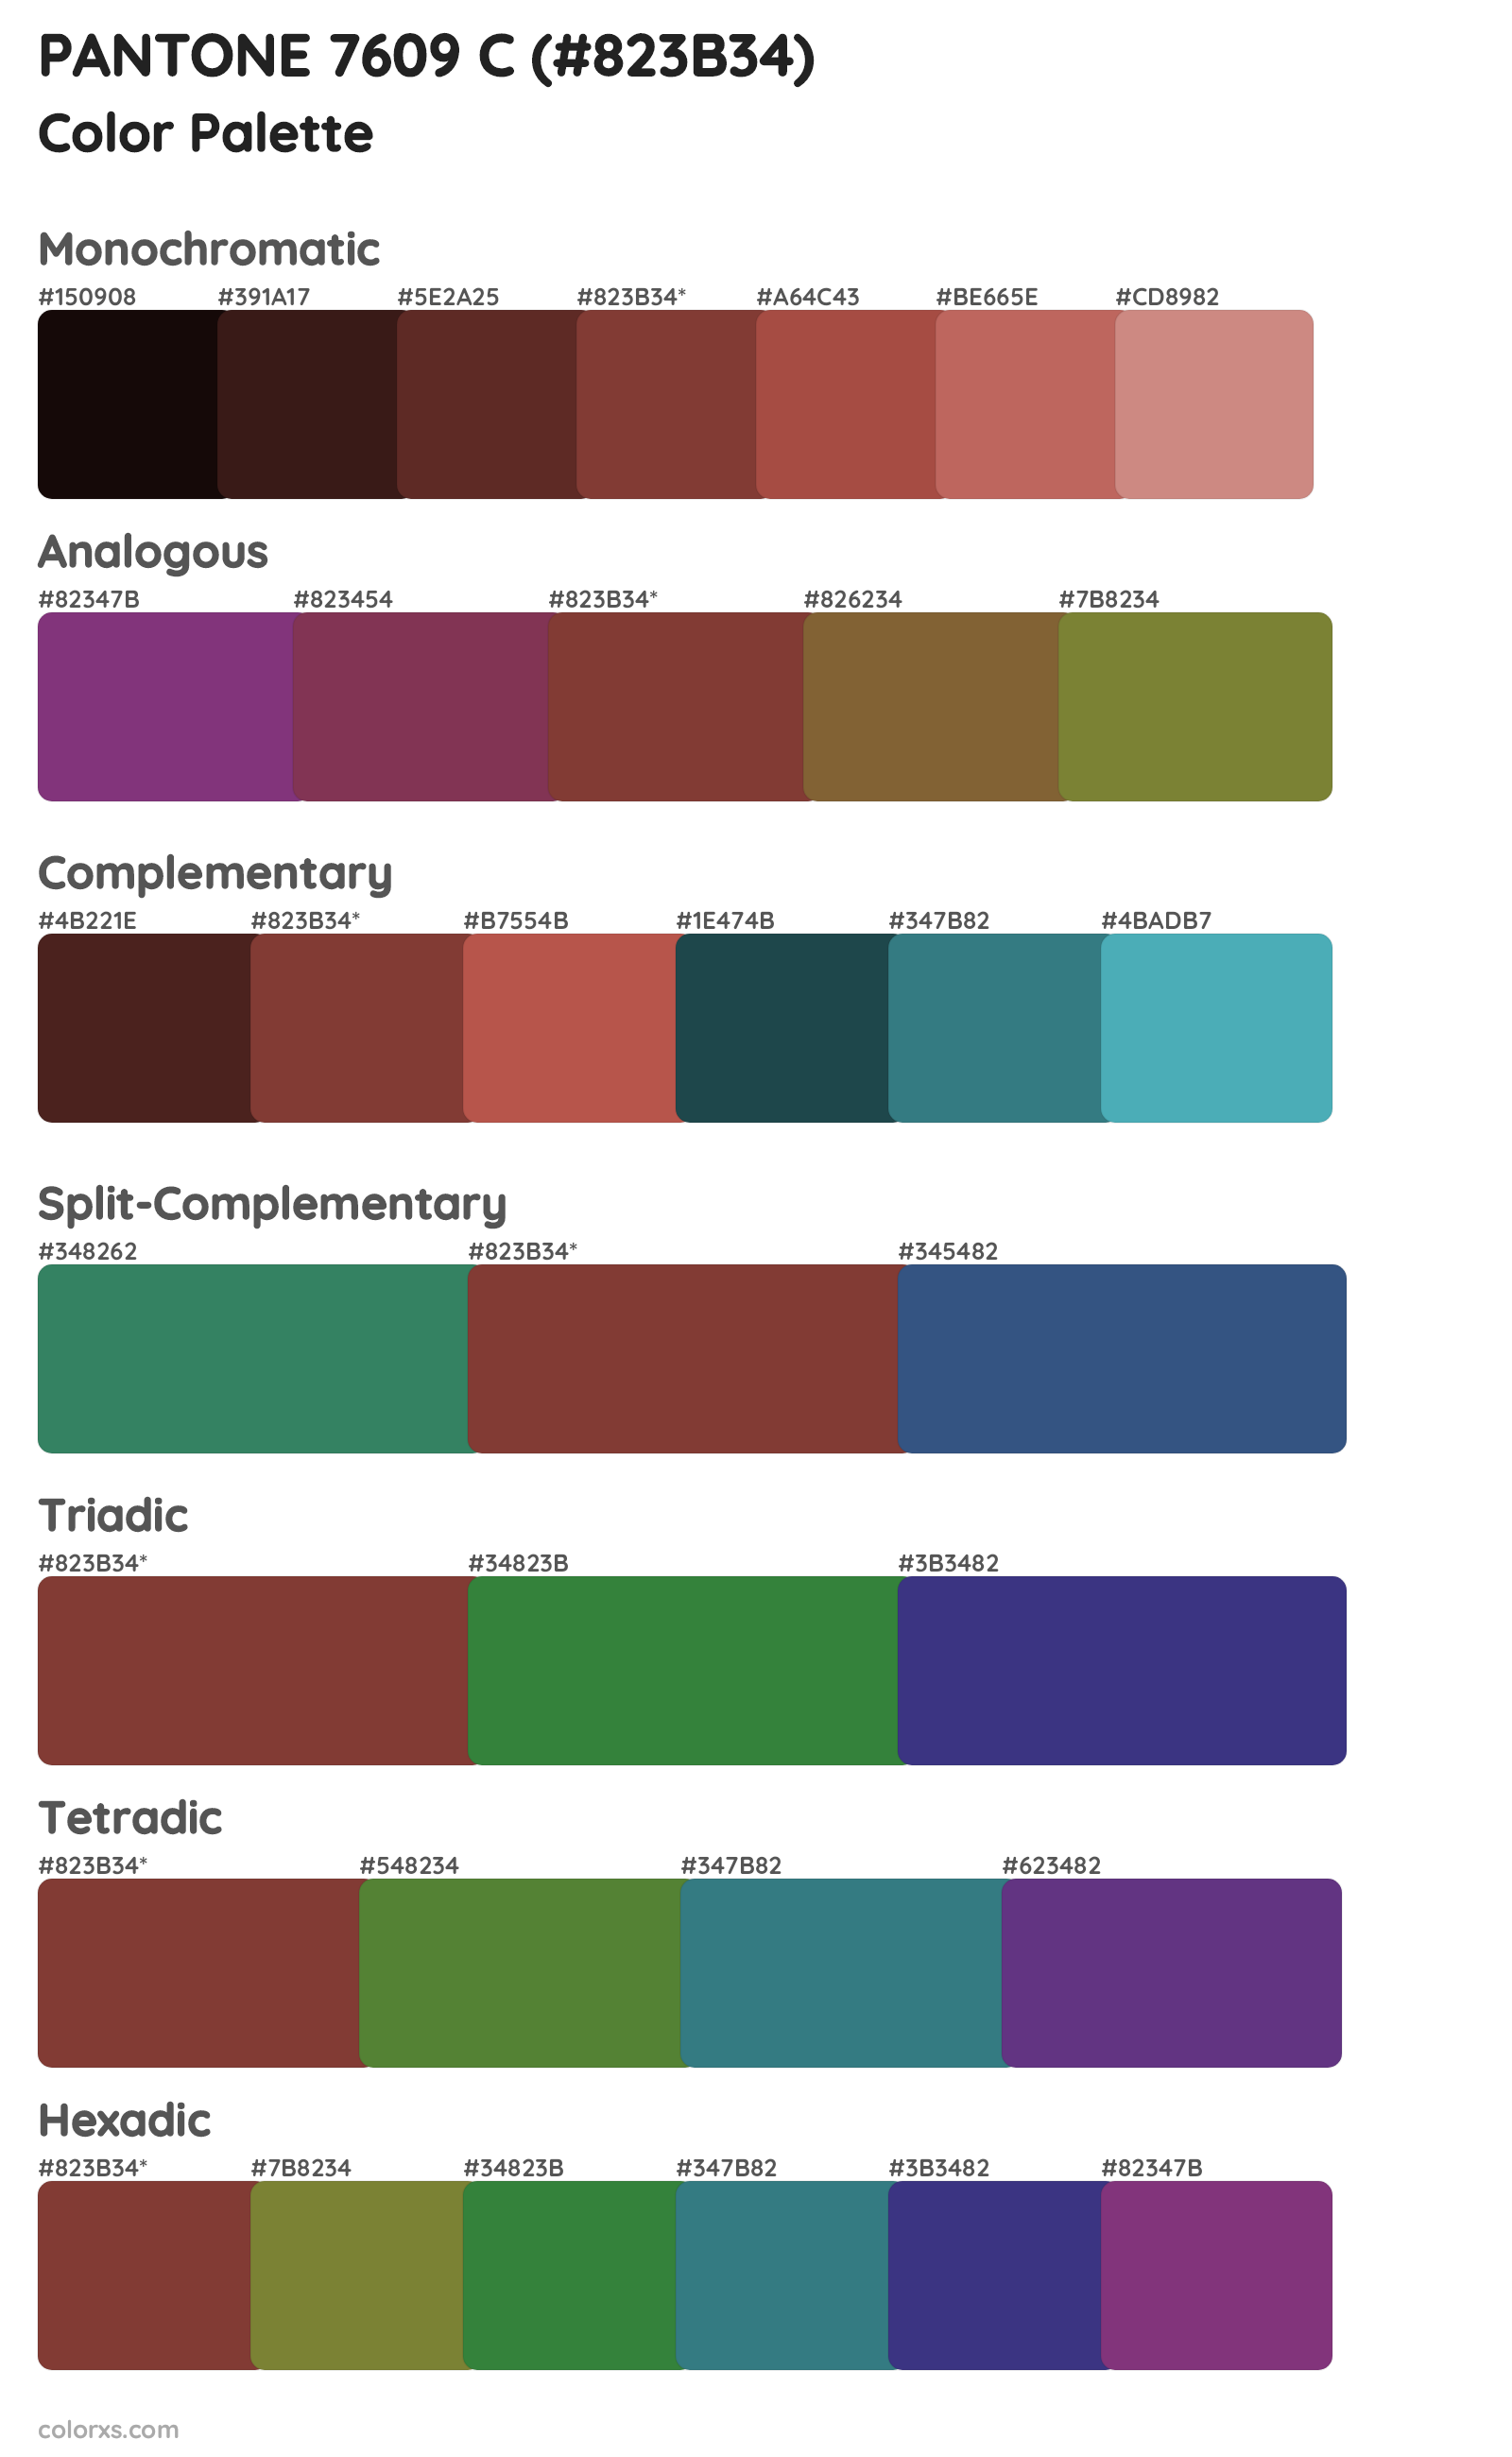 PANTONE 7609 C Color Scheme Palettes